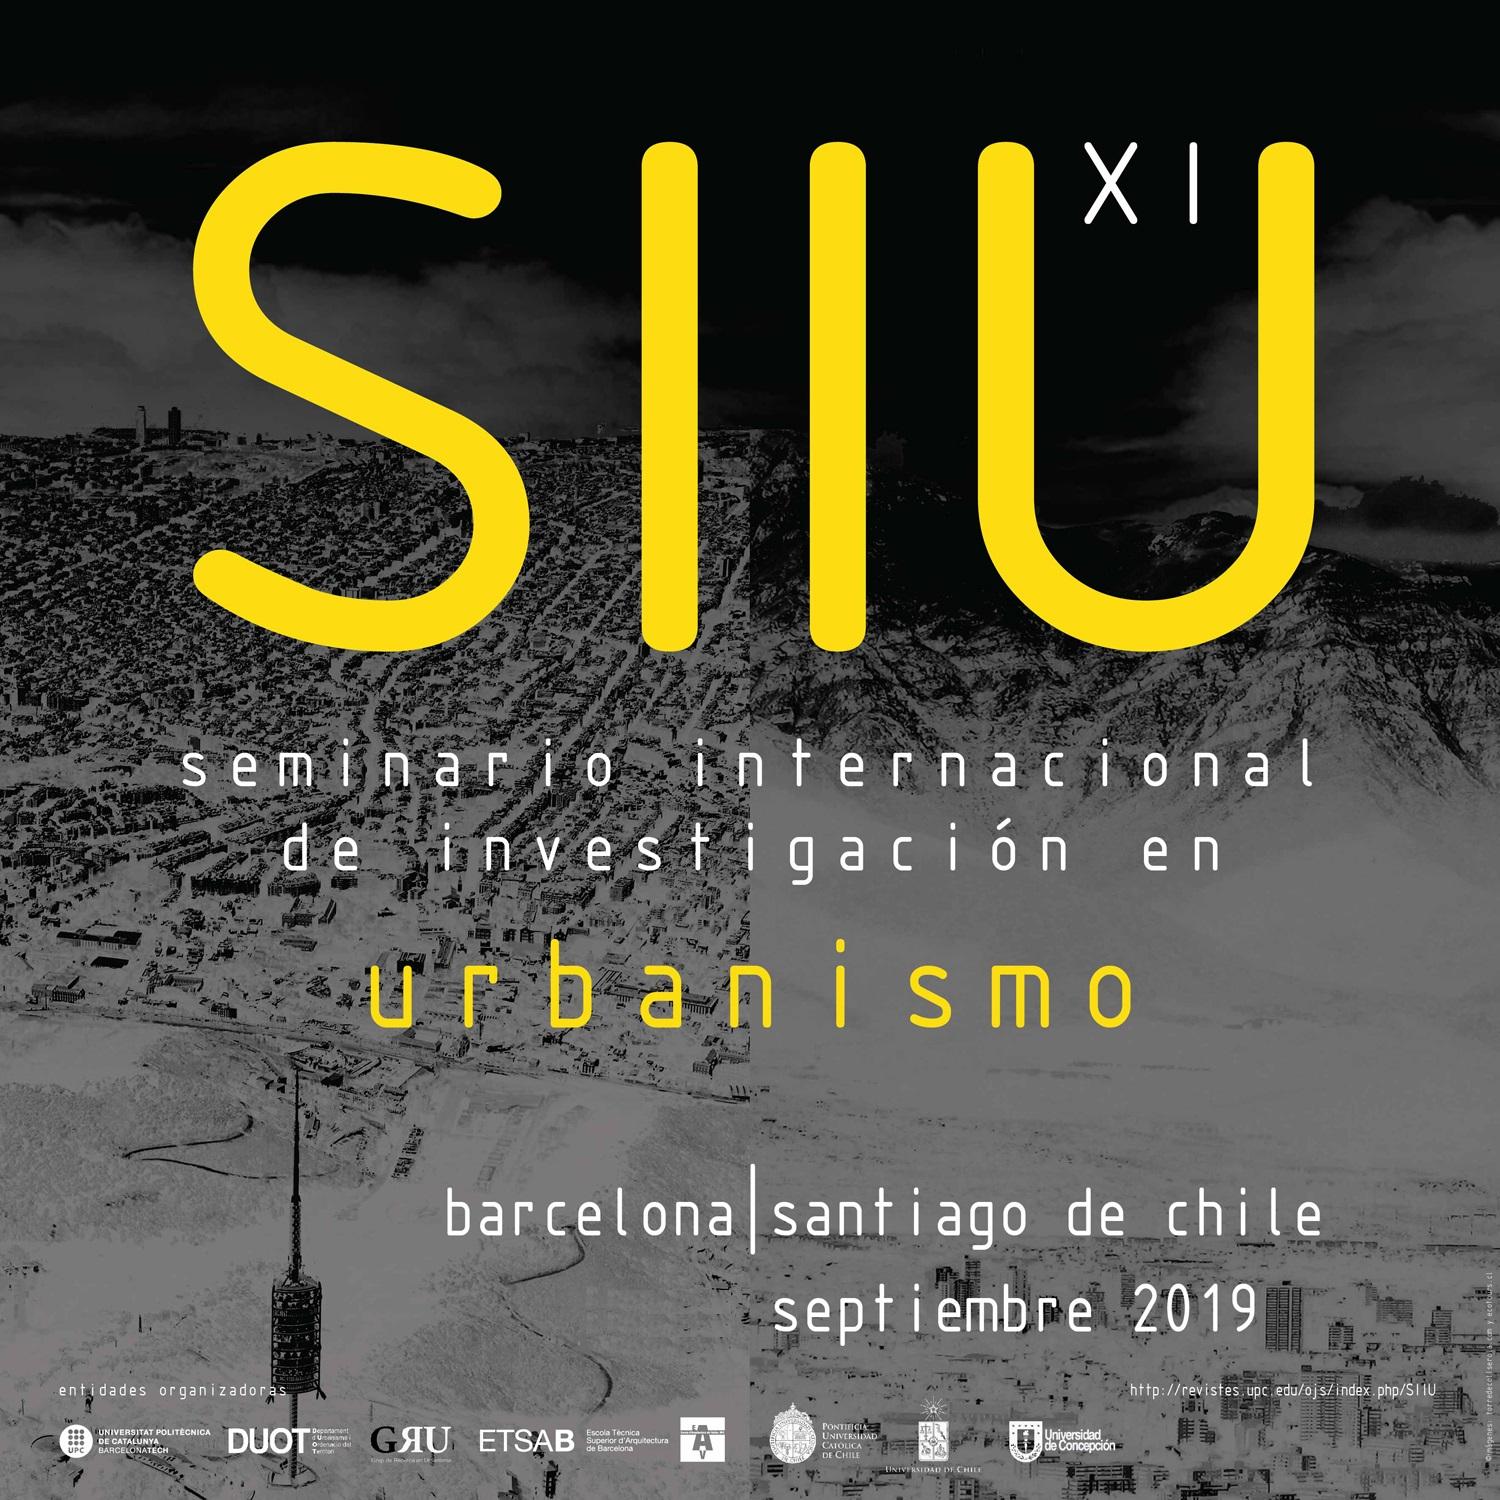 El SIIU es un evento académico, político y cultural, que se desarrolla en su XI versión en Santiago de Chile y Concepción, entre el 2 y 6 de septiembre de 2019.